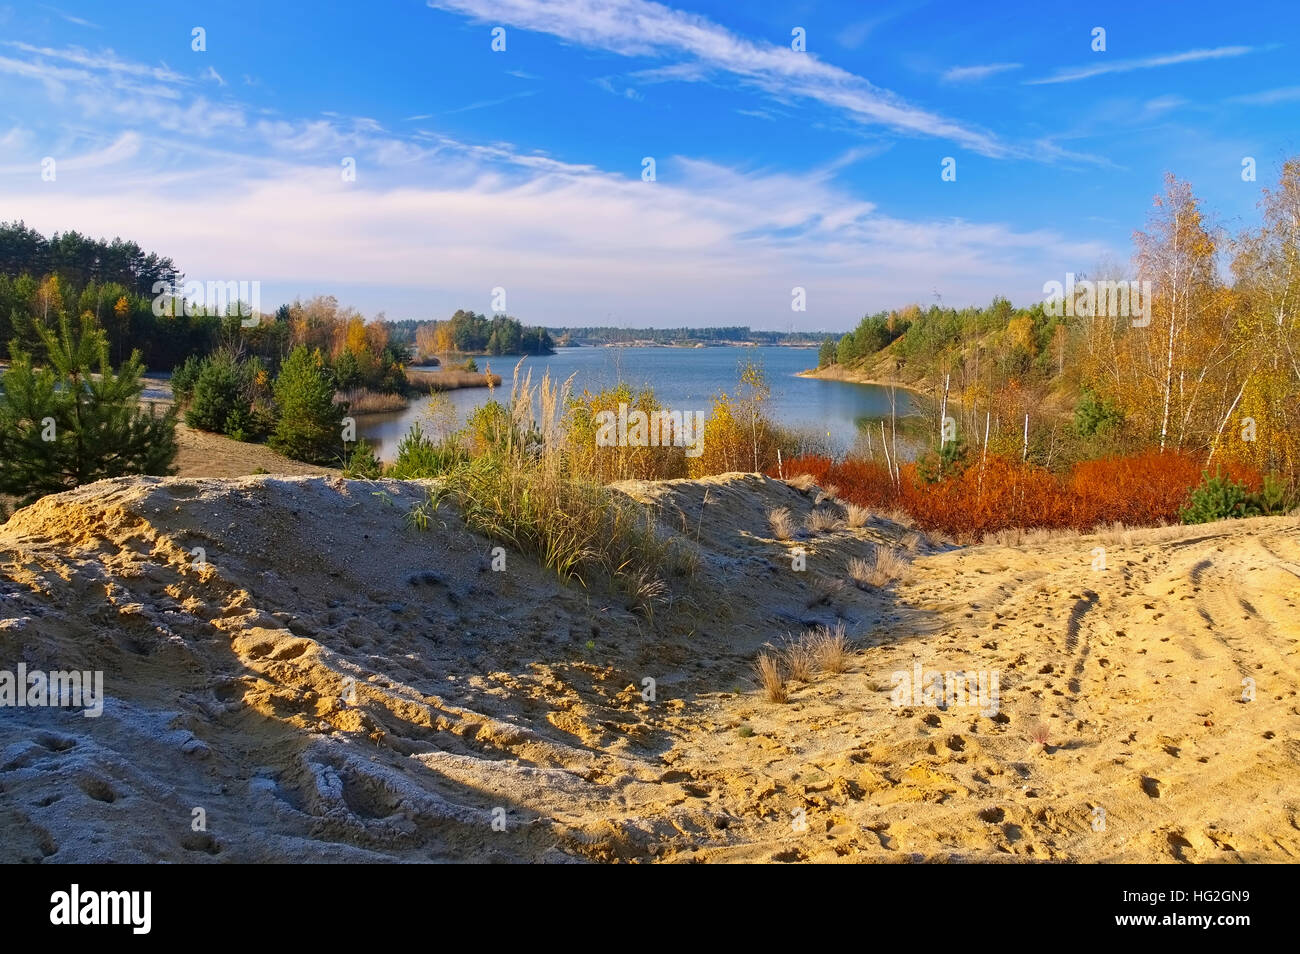 Zeischaer Kiessee, Landschaft in der Lausitz im Herbst - Zeischaer lake, landscape in Lusatia in autumn Stock Photo